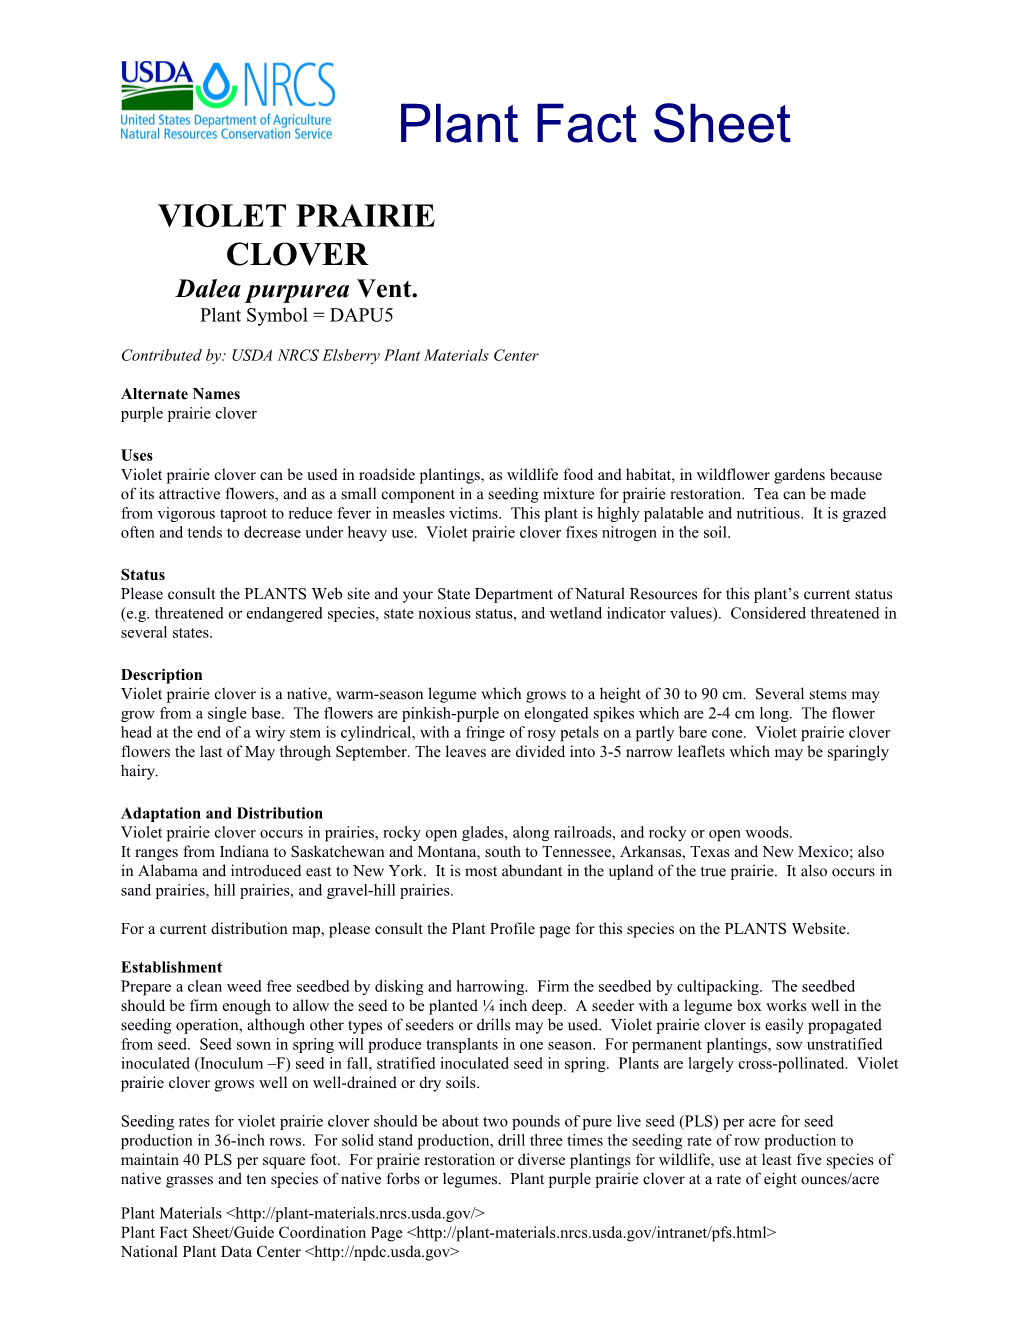 Violet Prairie Clover